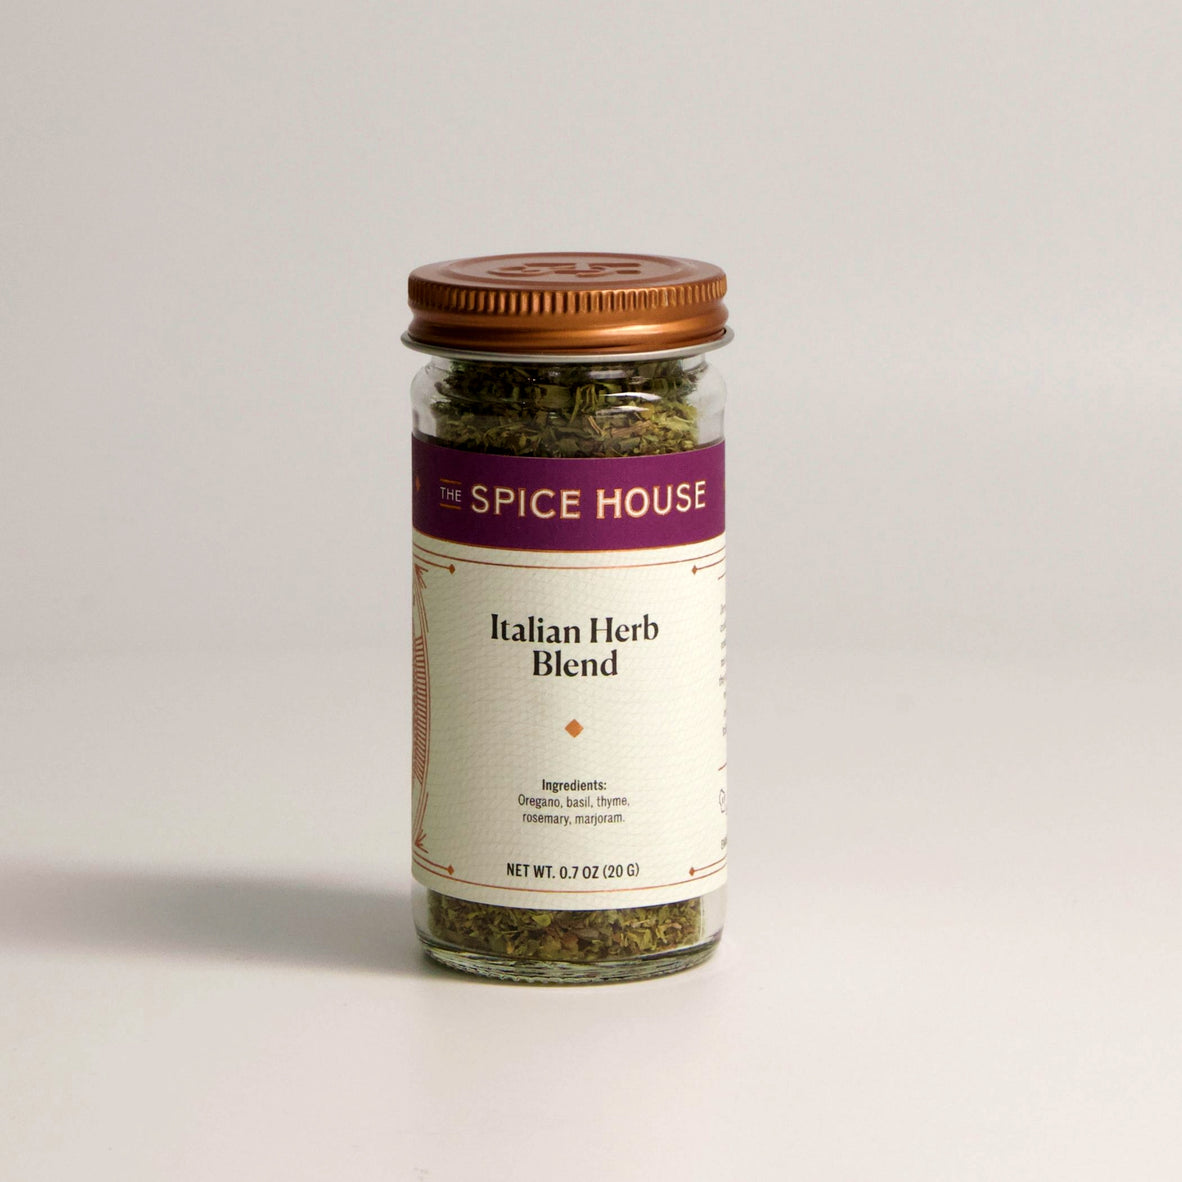 Italian Herb Blend, 0.7 oz or 2 oz Jar, 1/2 Cup, 0.7 oz.